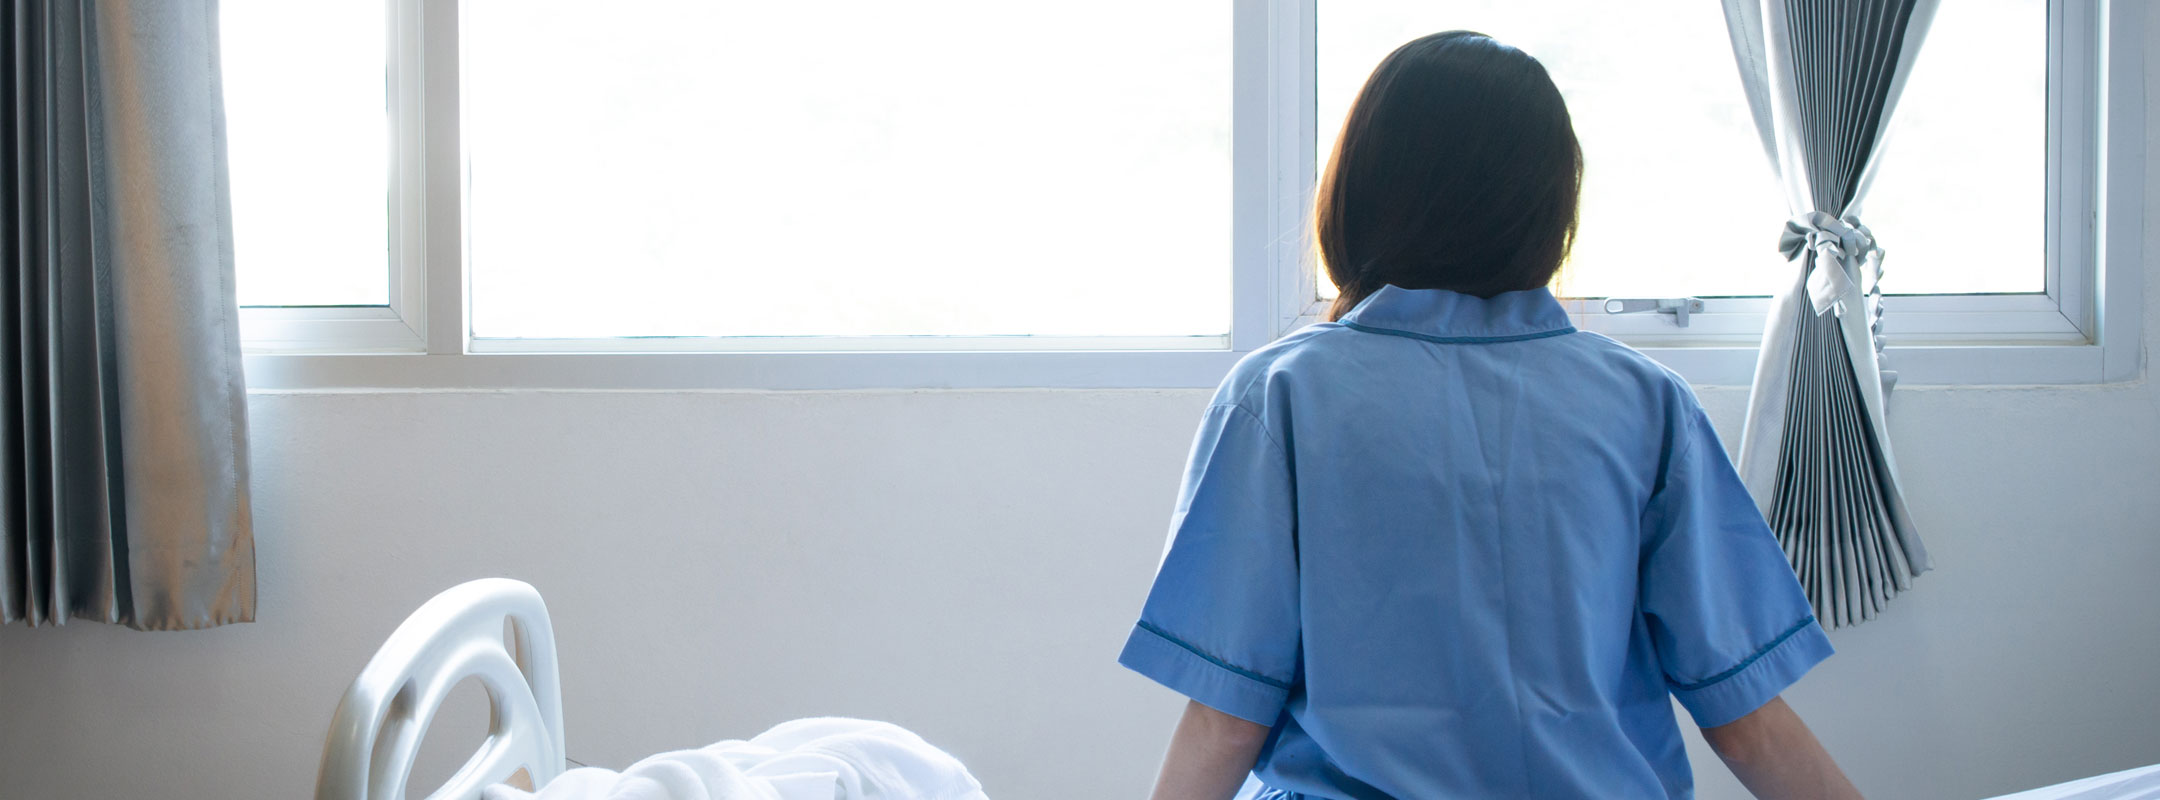 Eine Patientin sitzt auf ihrem Bett und schaut aus dem Fenster